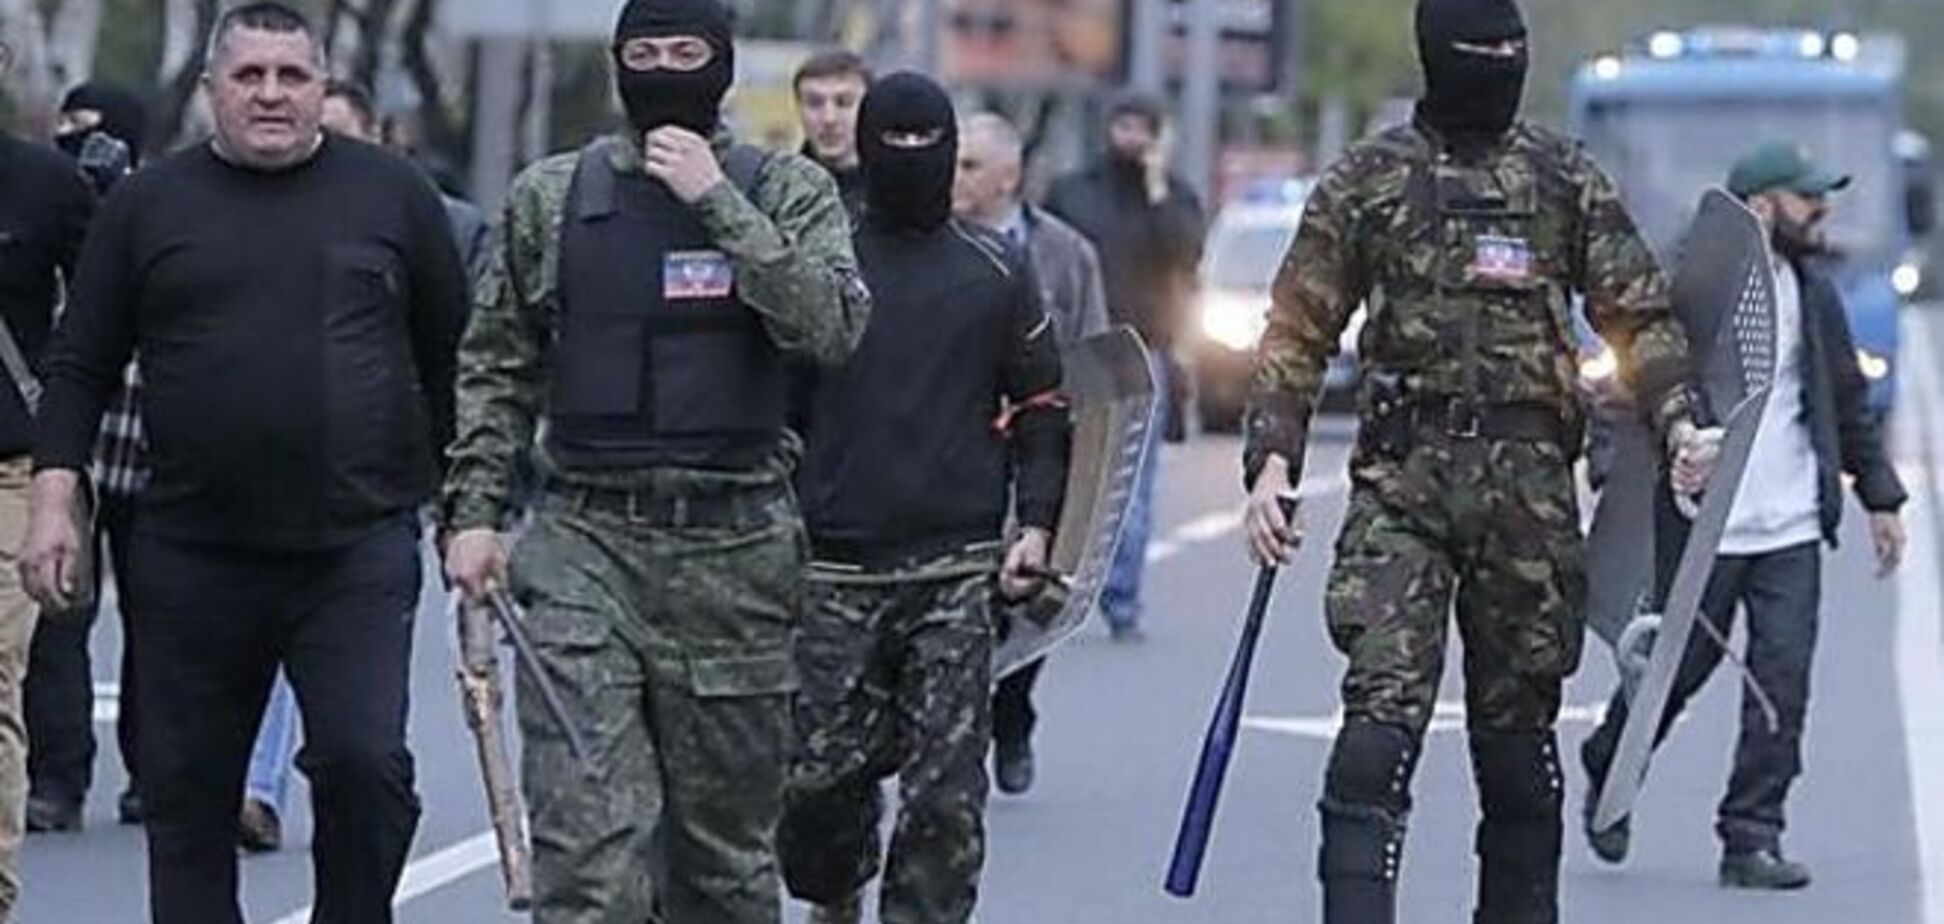 Шабаш терористів: в центр Донецька притягли танки, БМП та зв'язаних осіб - соцмережі